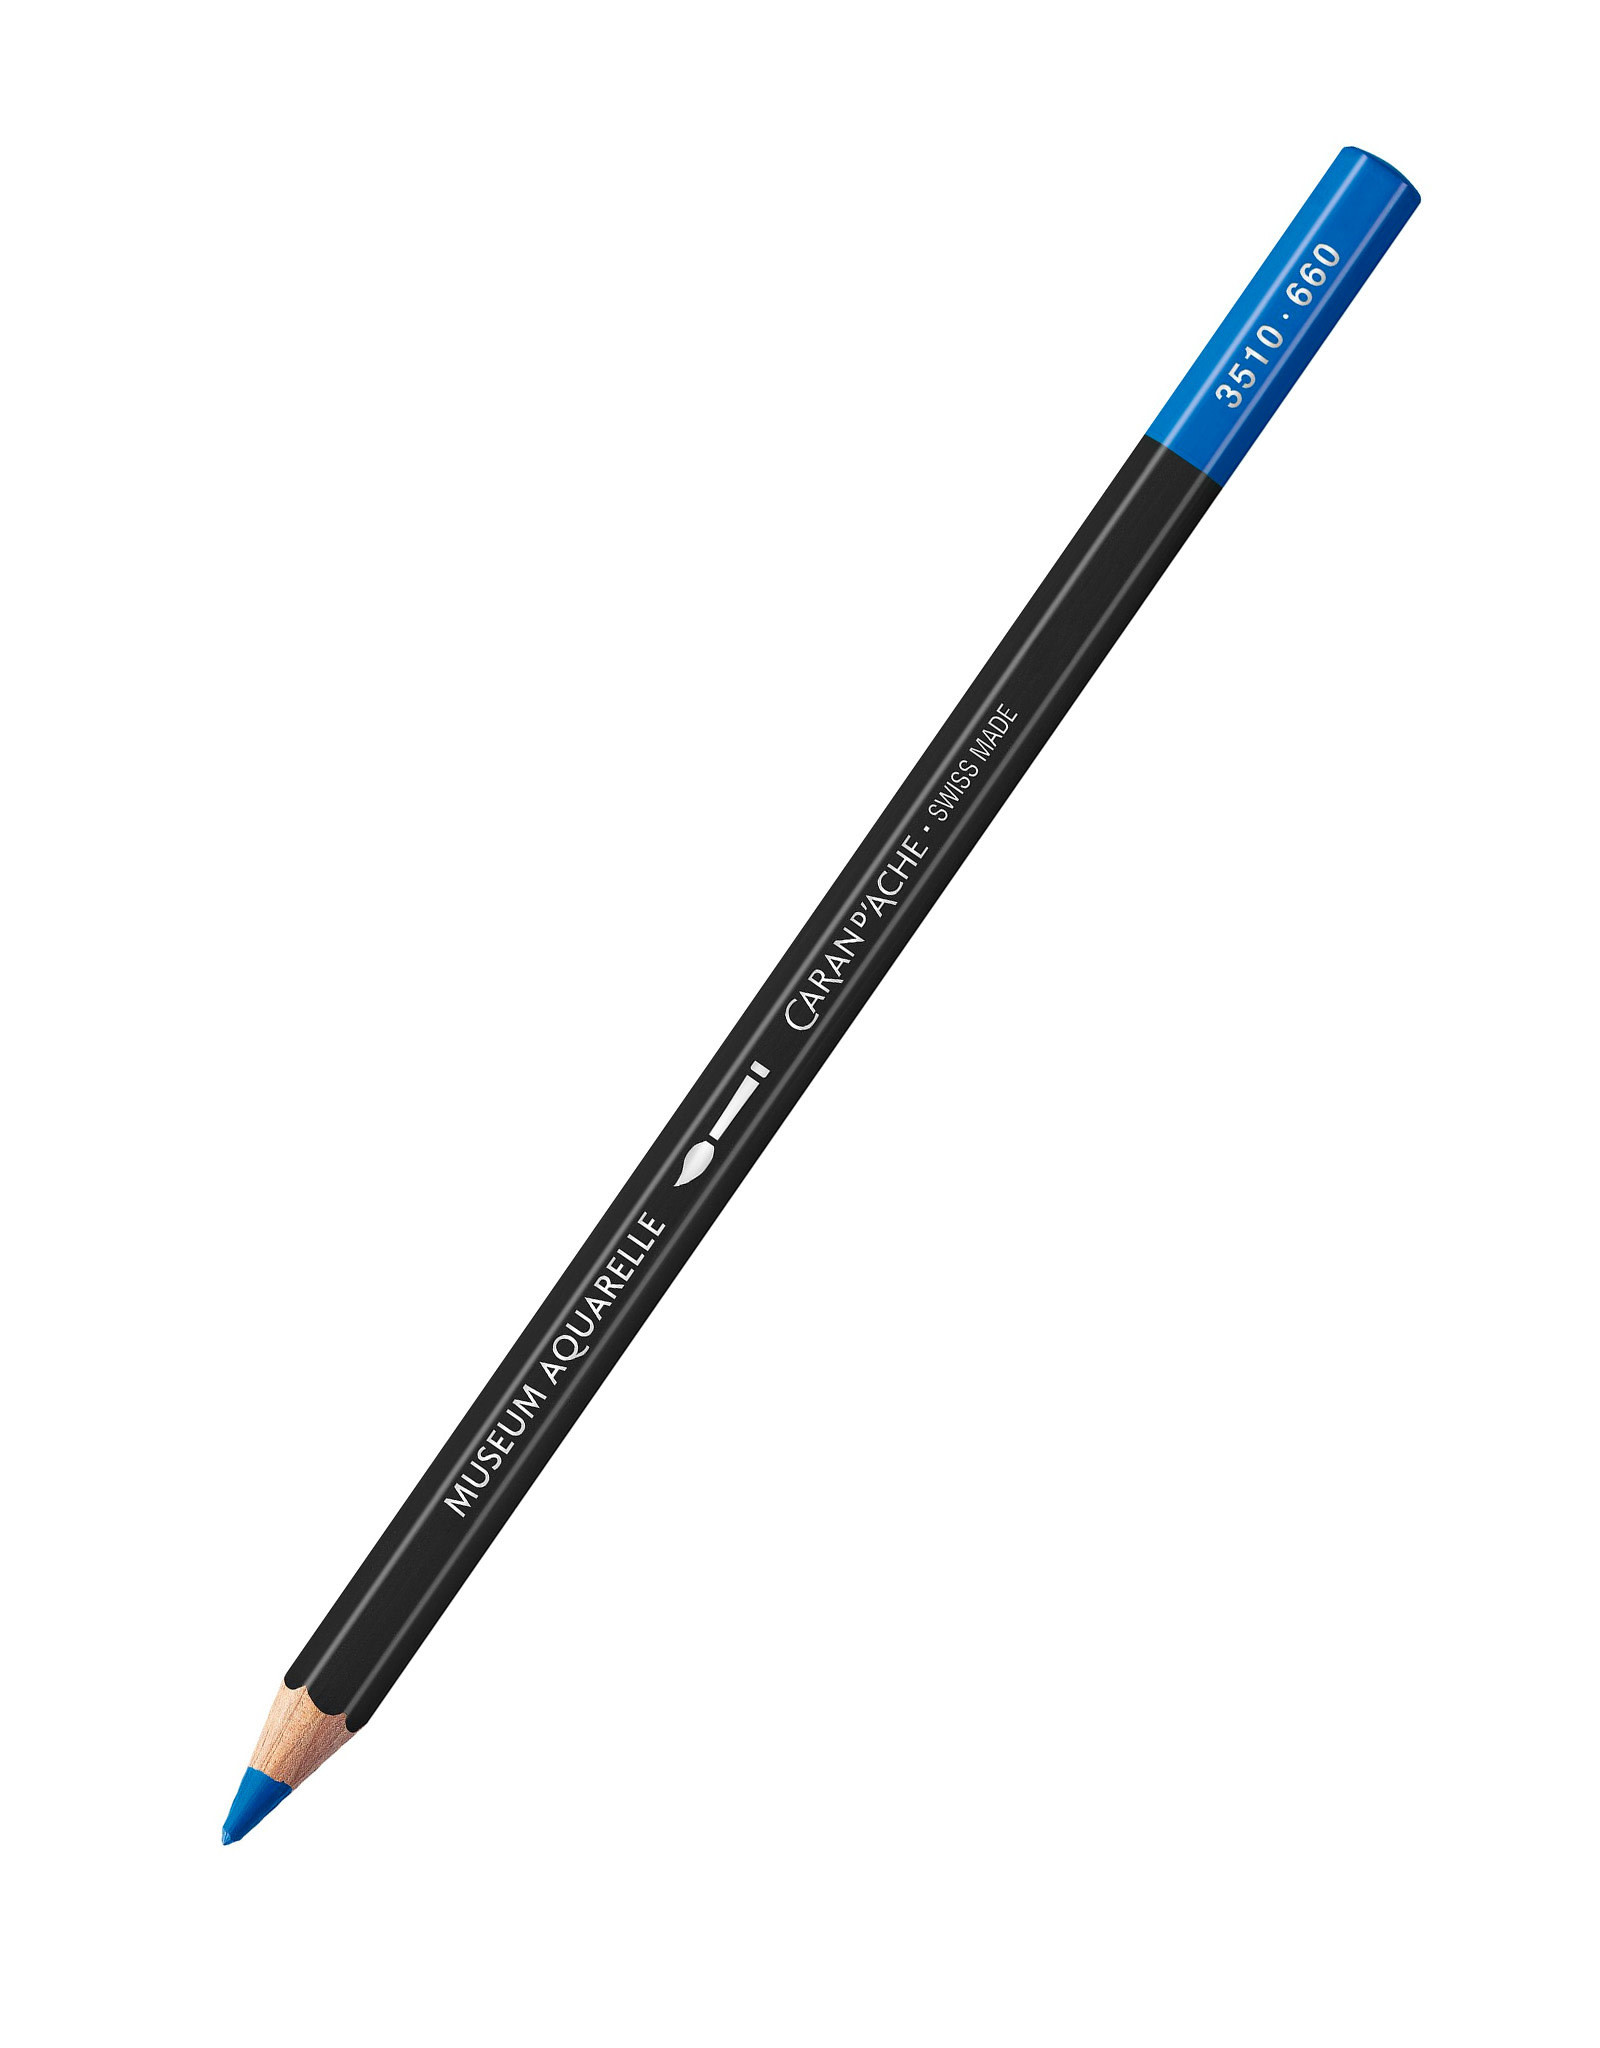 Caran d'Ache Caran D'Ache Museum Aquarelle Colored Pencils, Medium Cobalt Blue